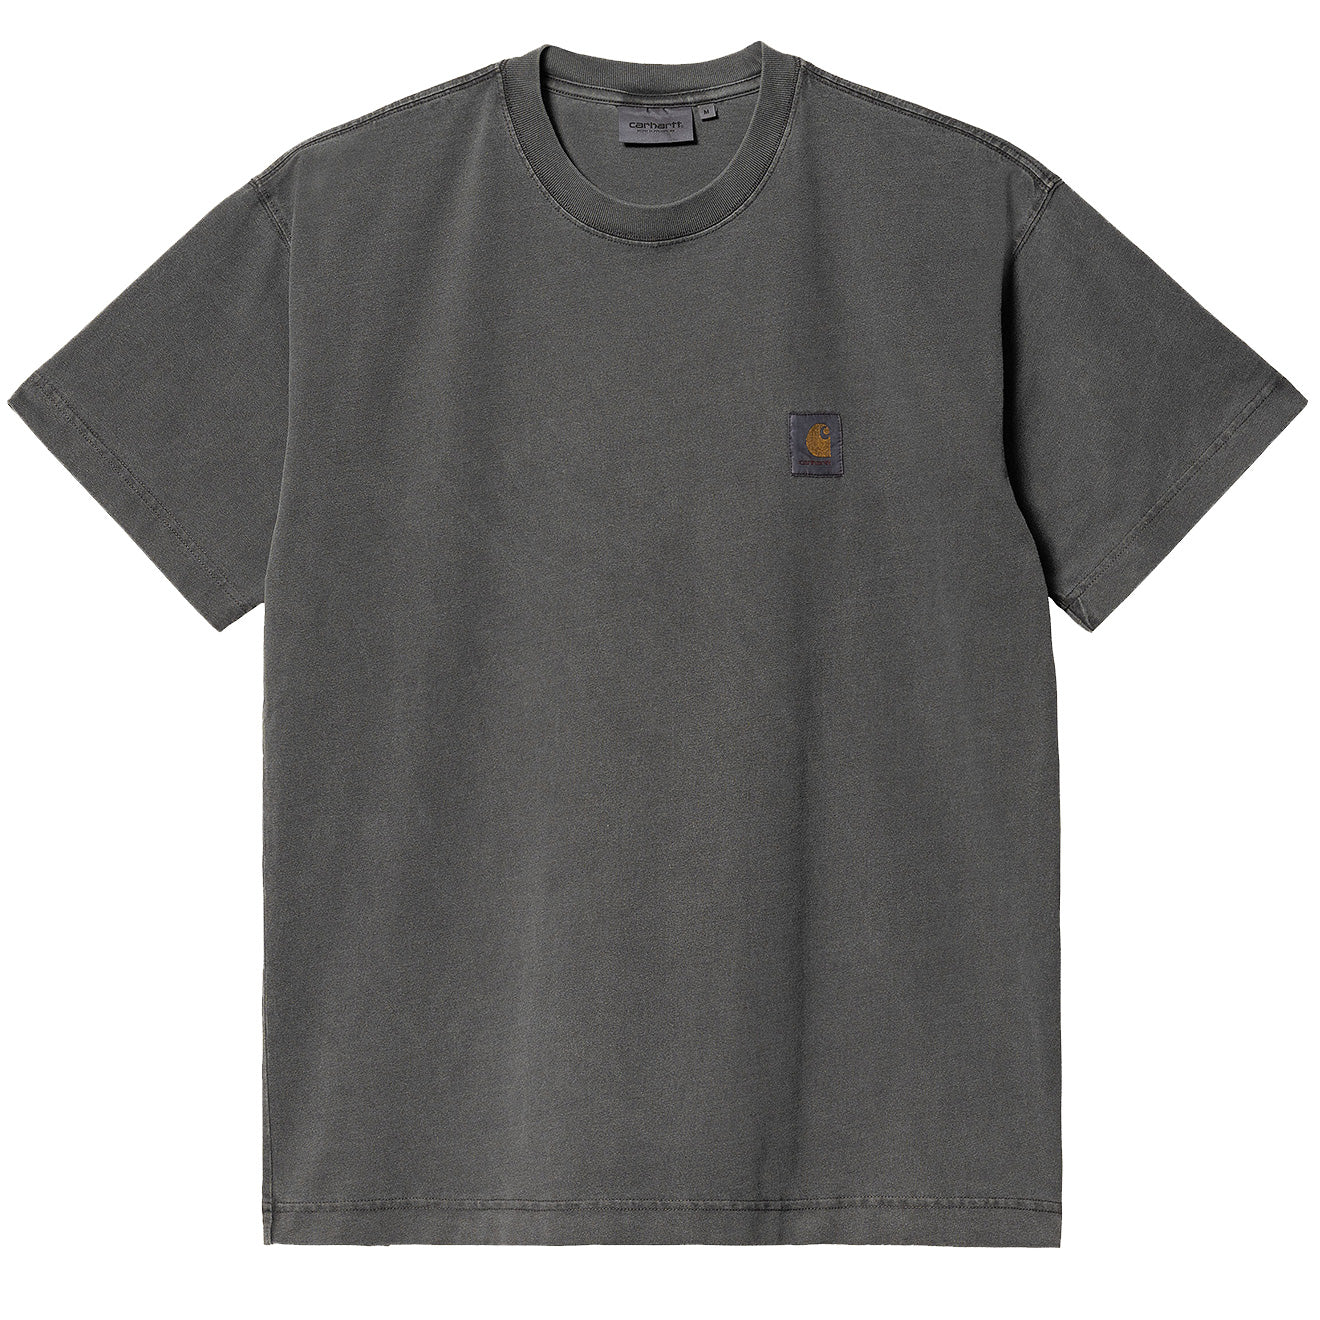 S/S Vista T-Shirt (Vulcan - garment dyed)